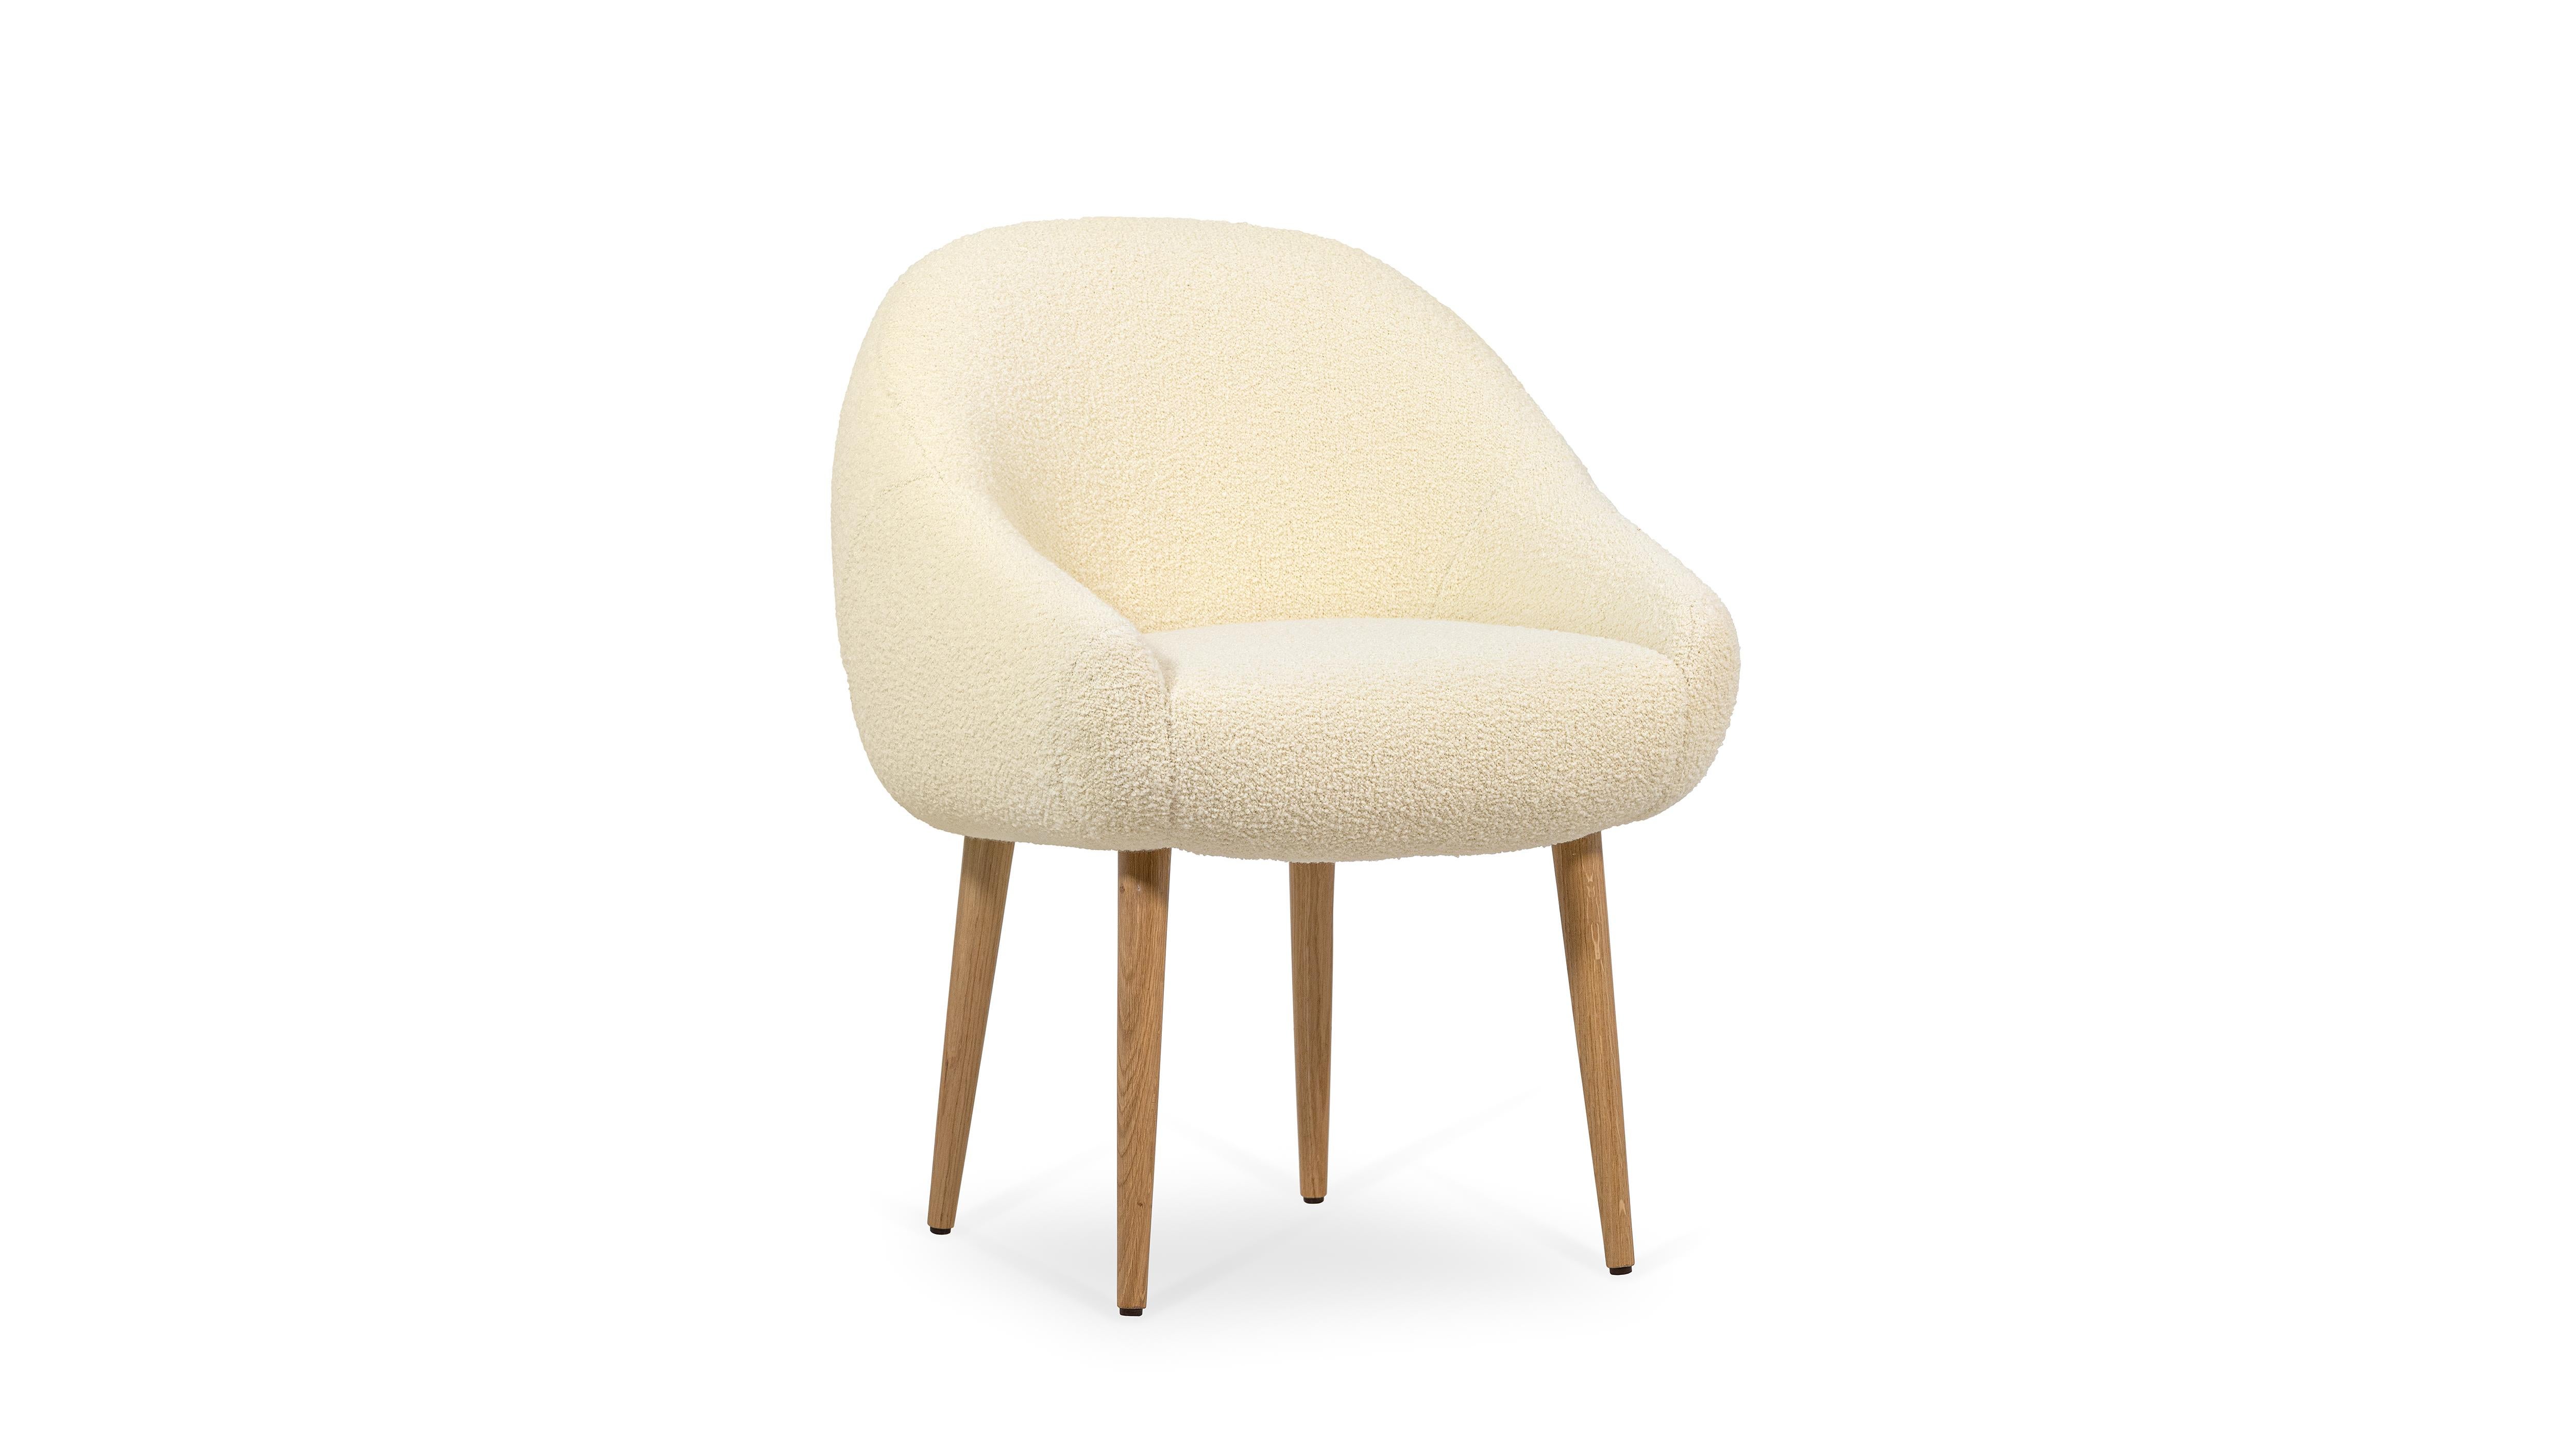 Chaise de salle à manger Niemeyer par InsidherLand
Dimensions : D 65 x L 62 x H 83 cm.
MATERIAL : Tissu InsidherLand Charm ref. 1, chêne verni mat.
12 kg.
Disponible en différents tissus.

La chaise de salle à manger Niemeyer porte le nom de